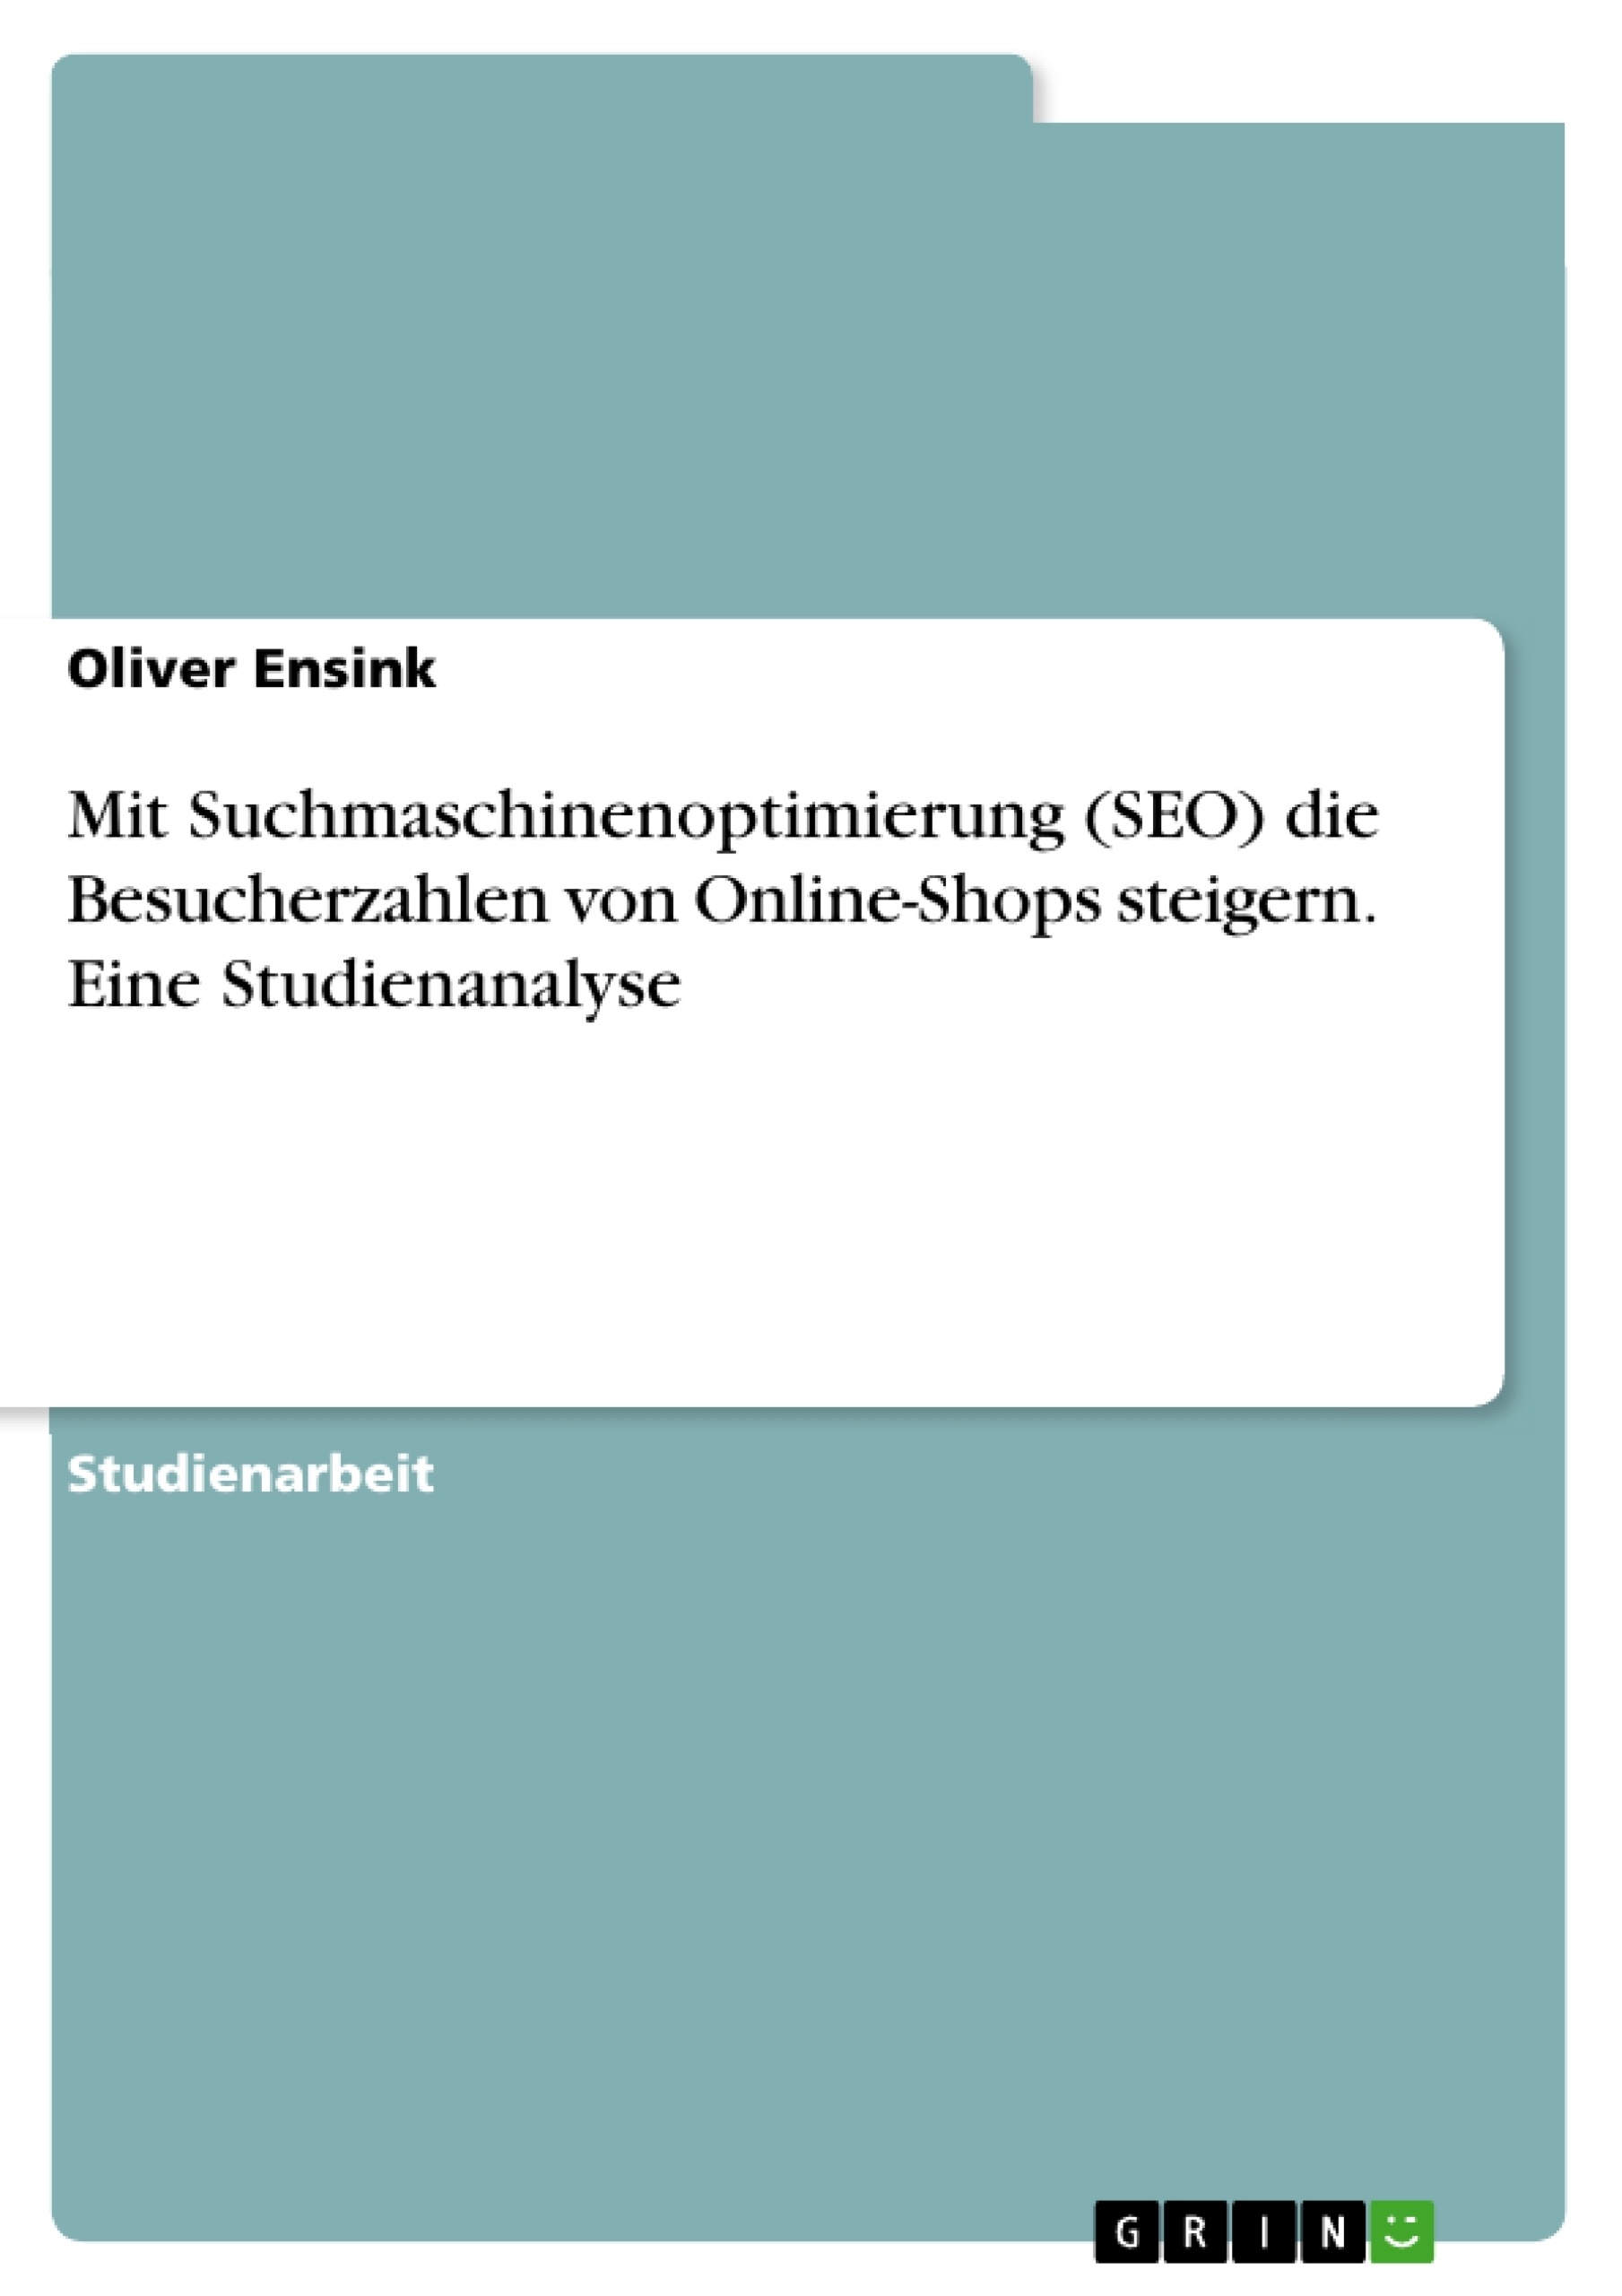 Título: Mit Suchmaschinenoptimierung (SEO) die Besucherzahlen von Online-Shops steigern. Eine Studienanalyse